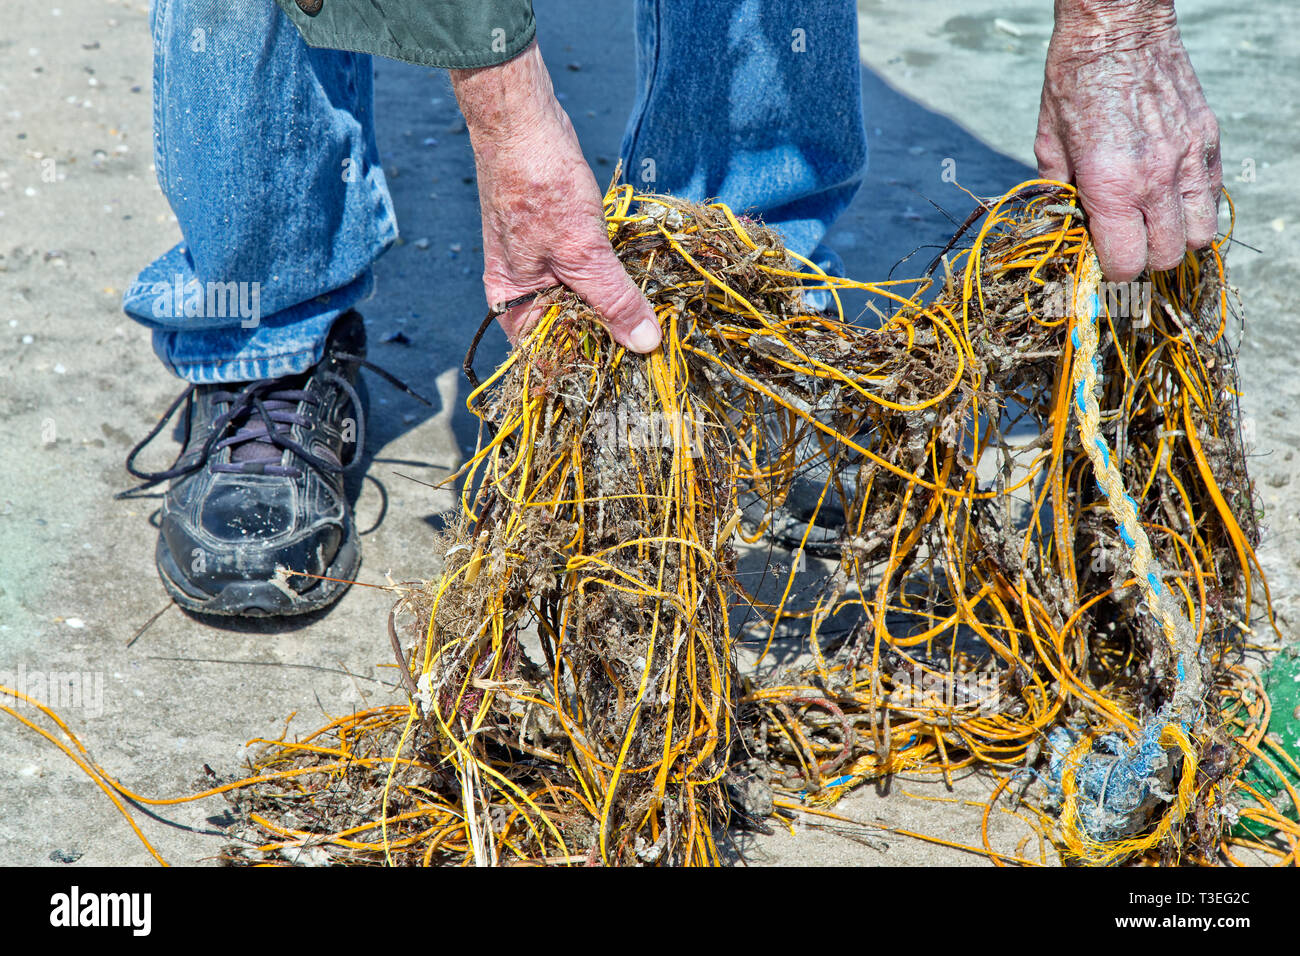 Costa, playa costera, macho adulto quitando la basura, recubierto de polietileno de pescar. Foto de stock